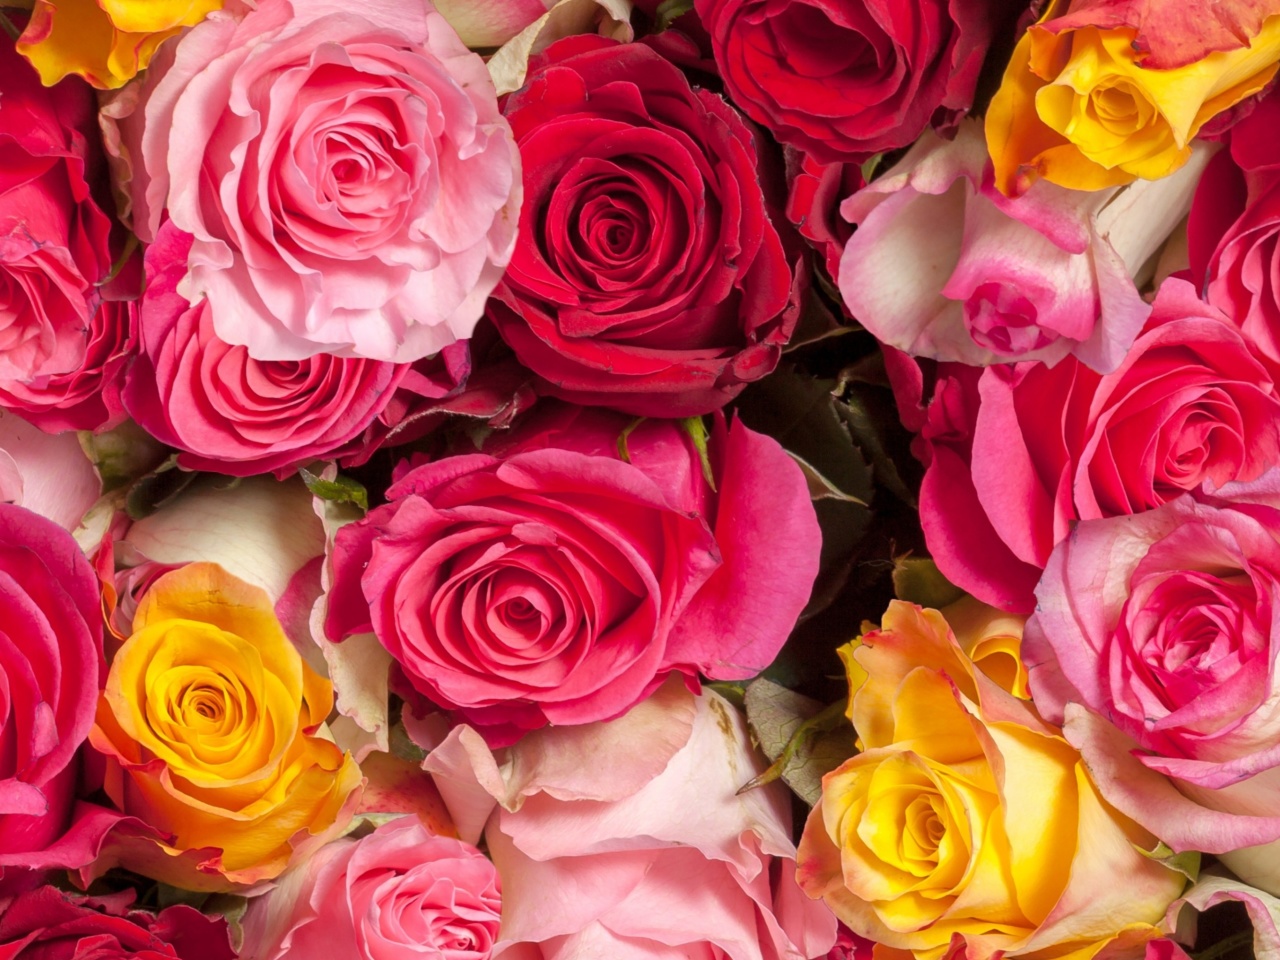 Das Colorful Roses 5k Wallpaper 1280x960